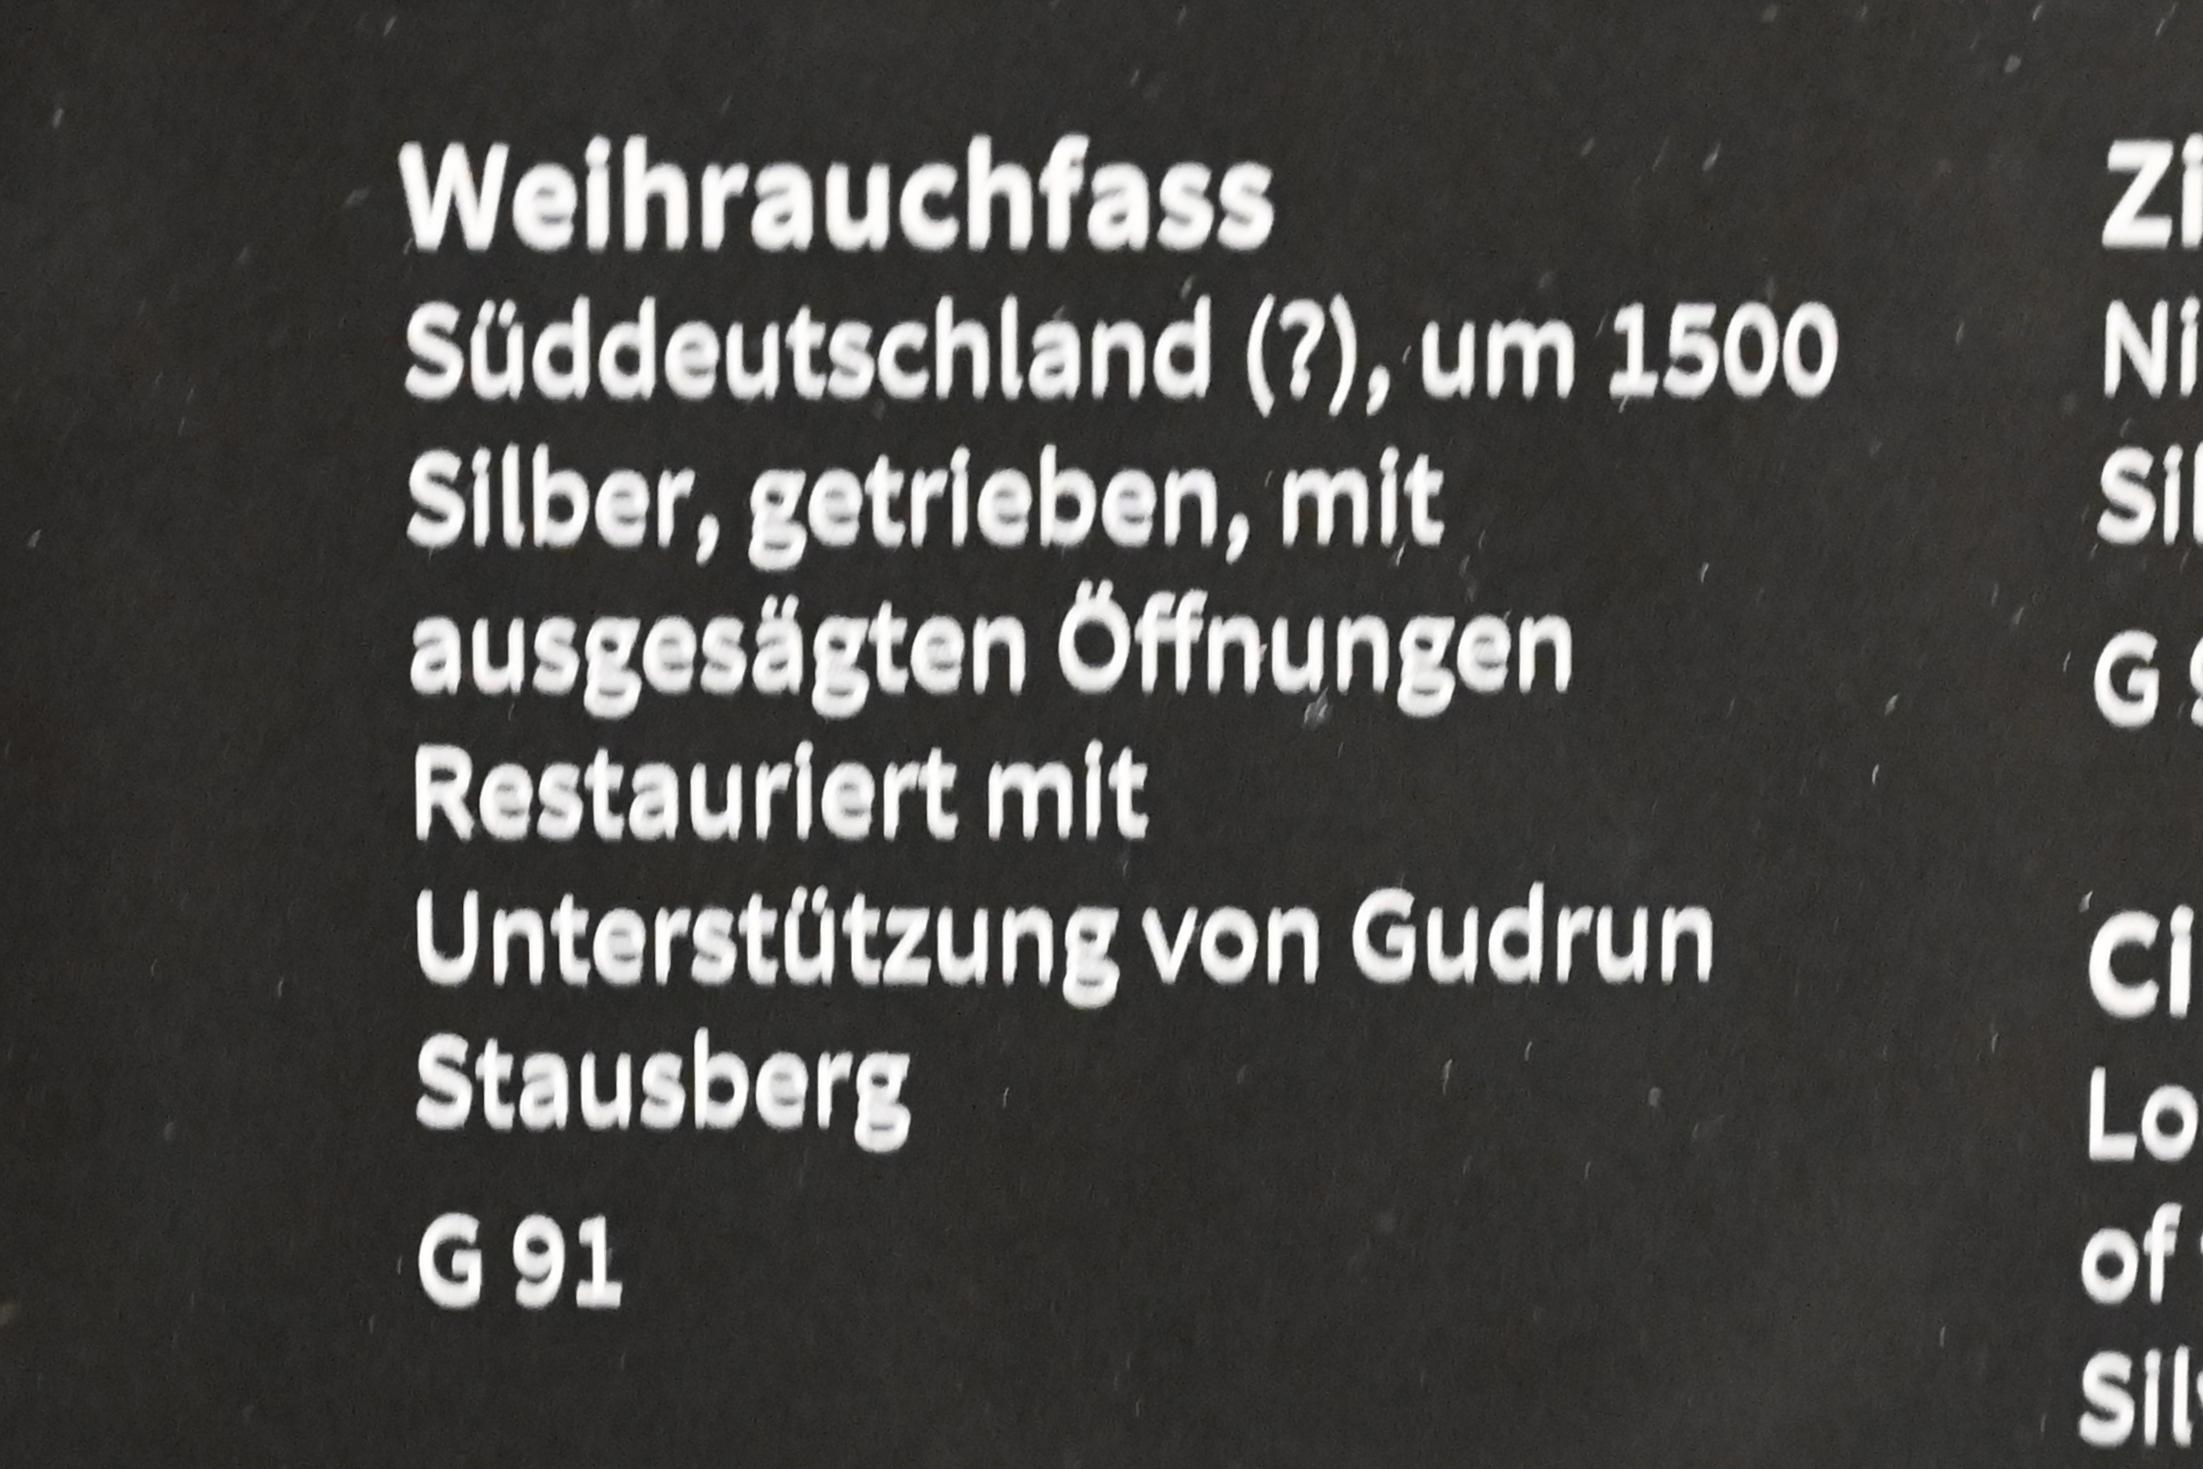 Weihrauchfass, Köln, Museum Schnütgen, Saal 8, um 1500, Bild 2/2